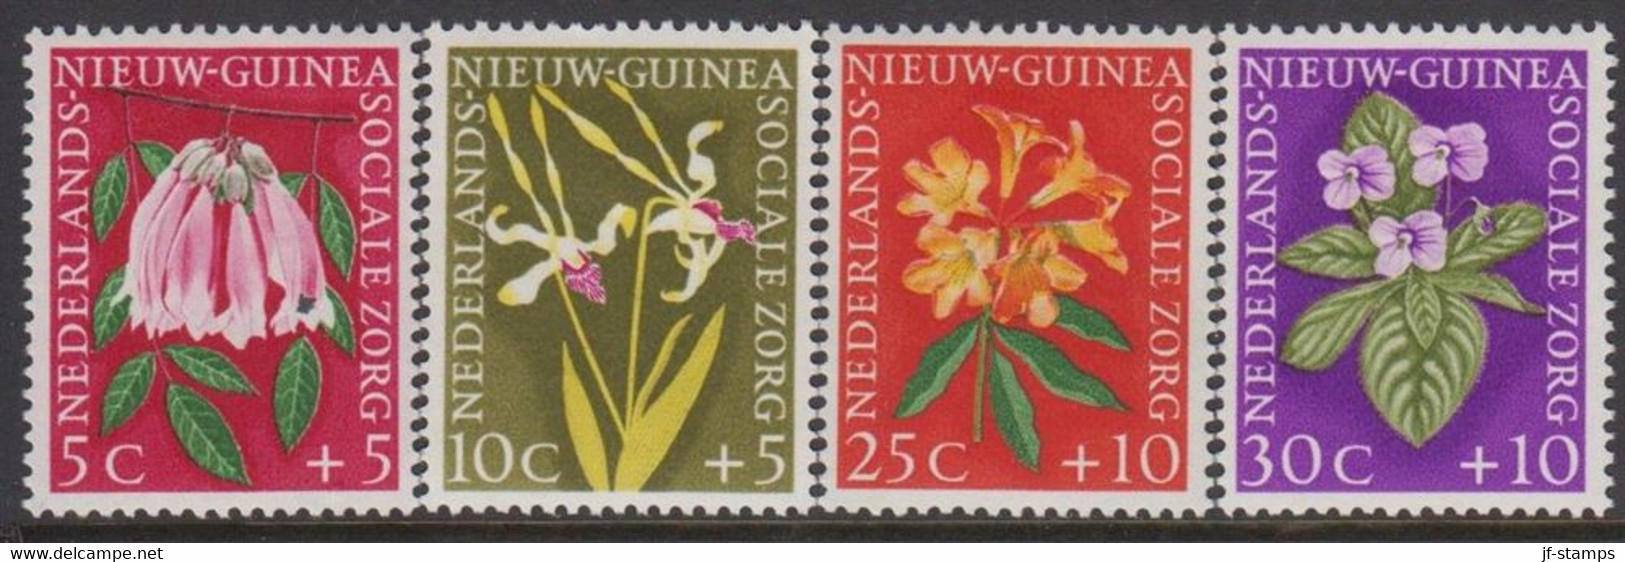 1959. NIEUW GUINEA. Flowers Complete Set Hinged.  - JF529305 - Nouvelle Guinée Néerlandaise